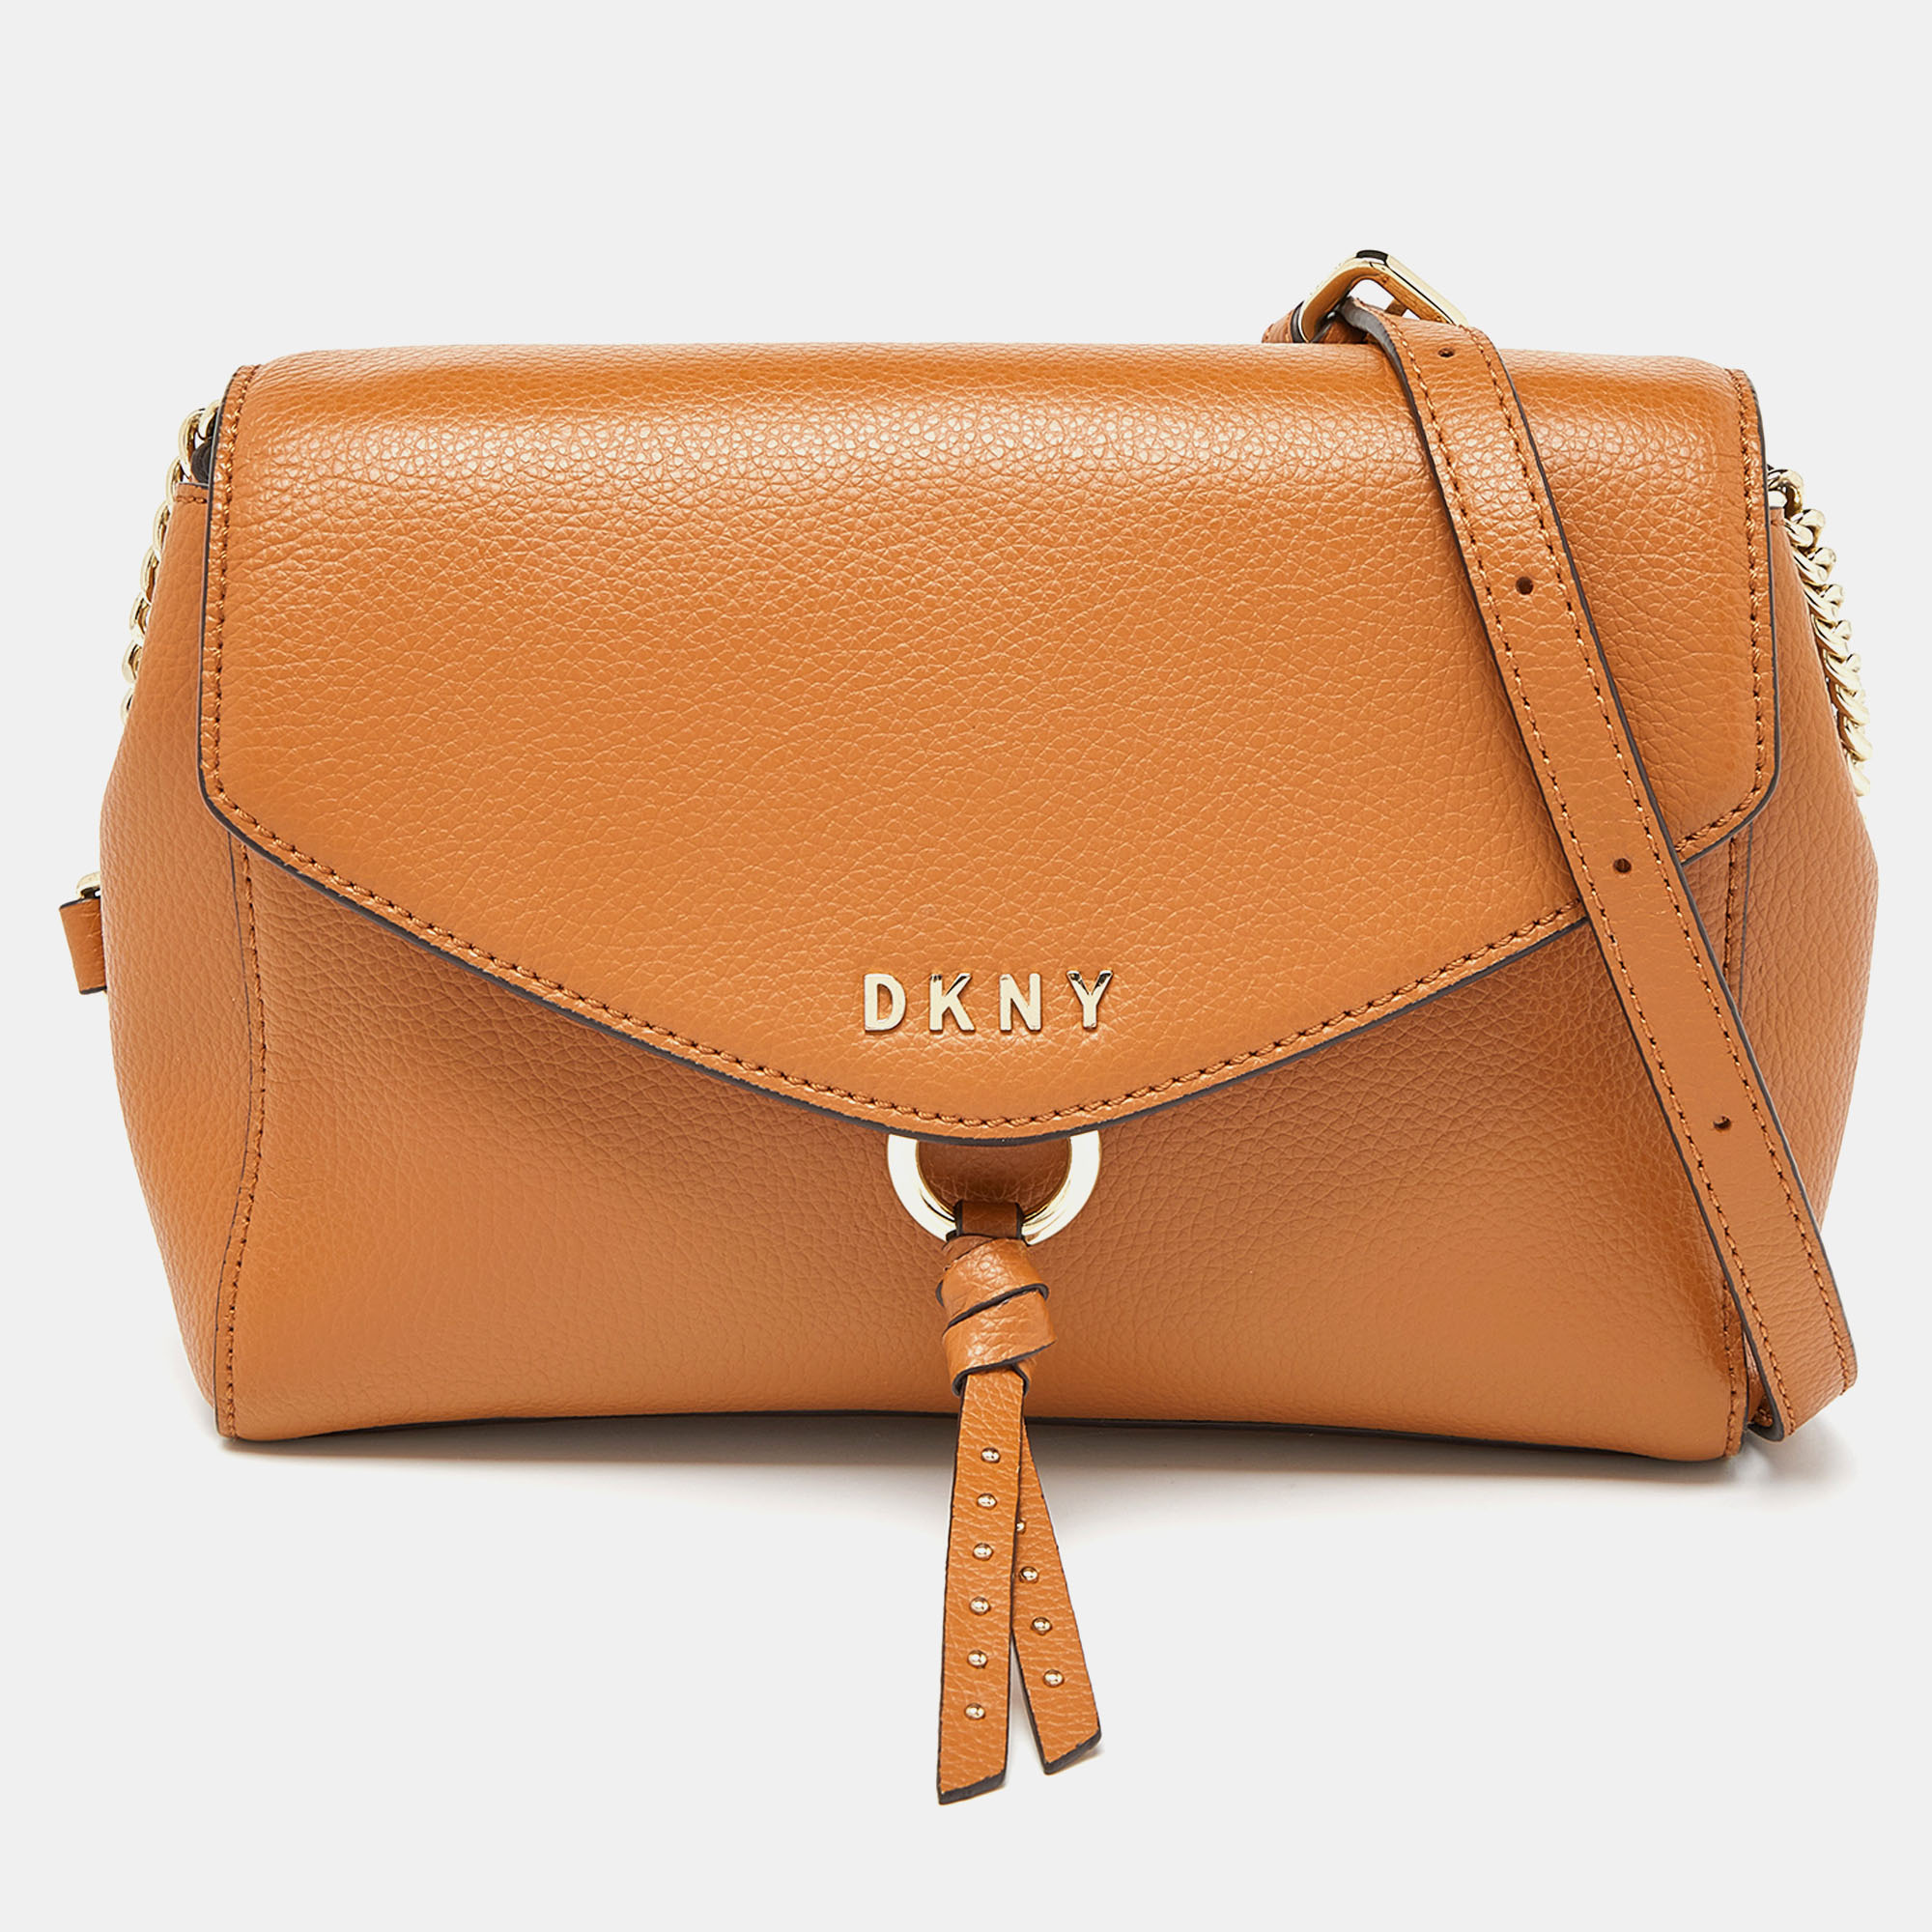 DKNY Tan Leather Greenwich Crossbody Bag